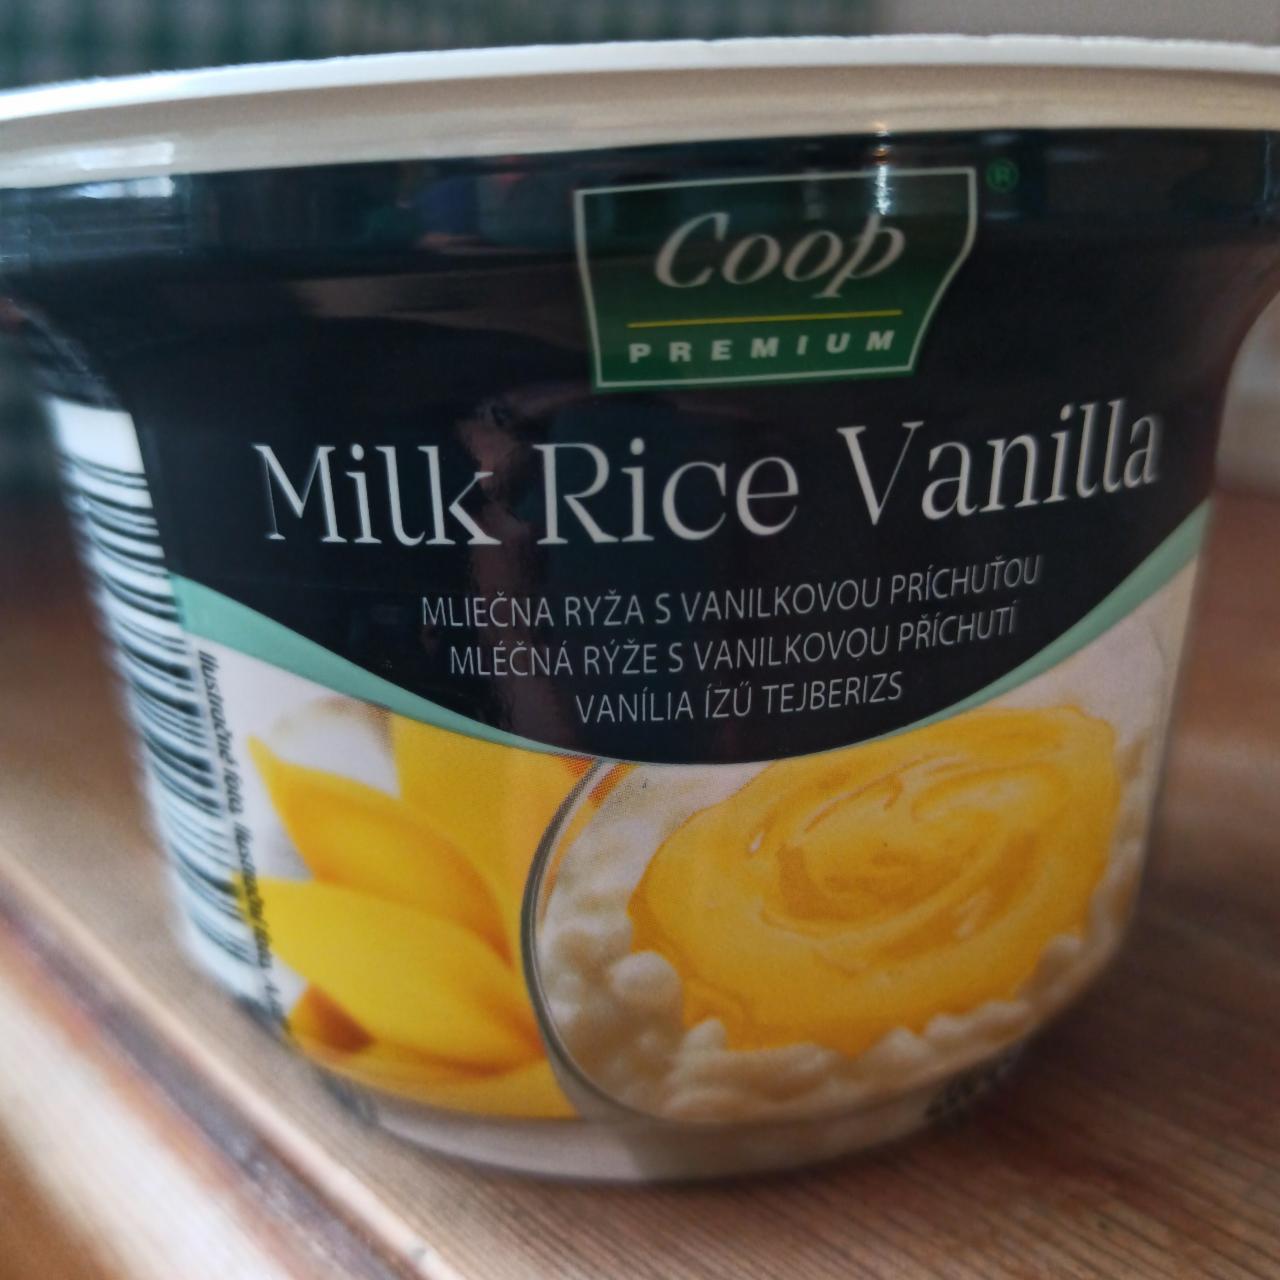 Fotografie - Milk Rice Vanilla Coop Premium